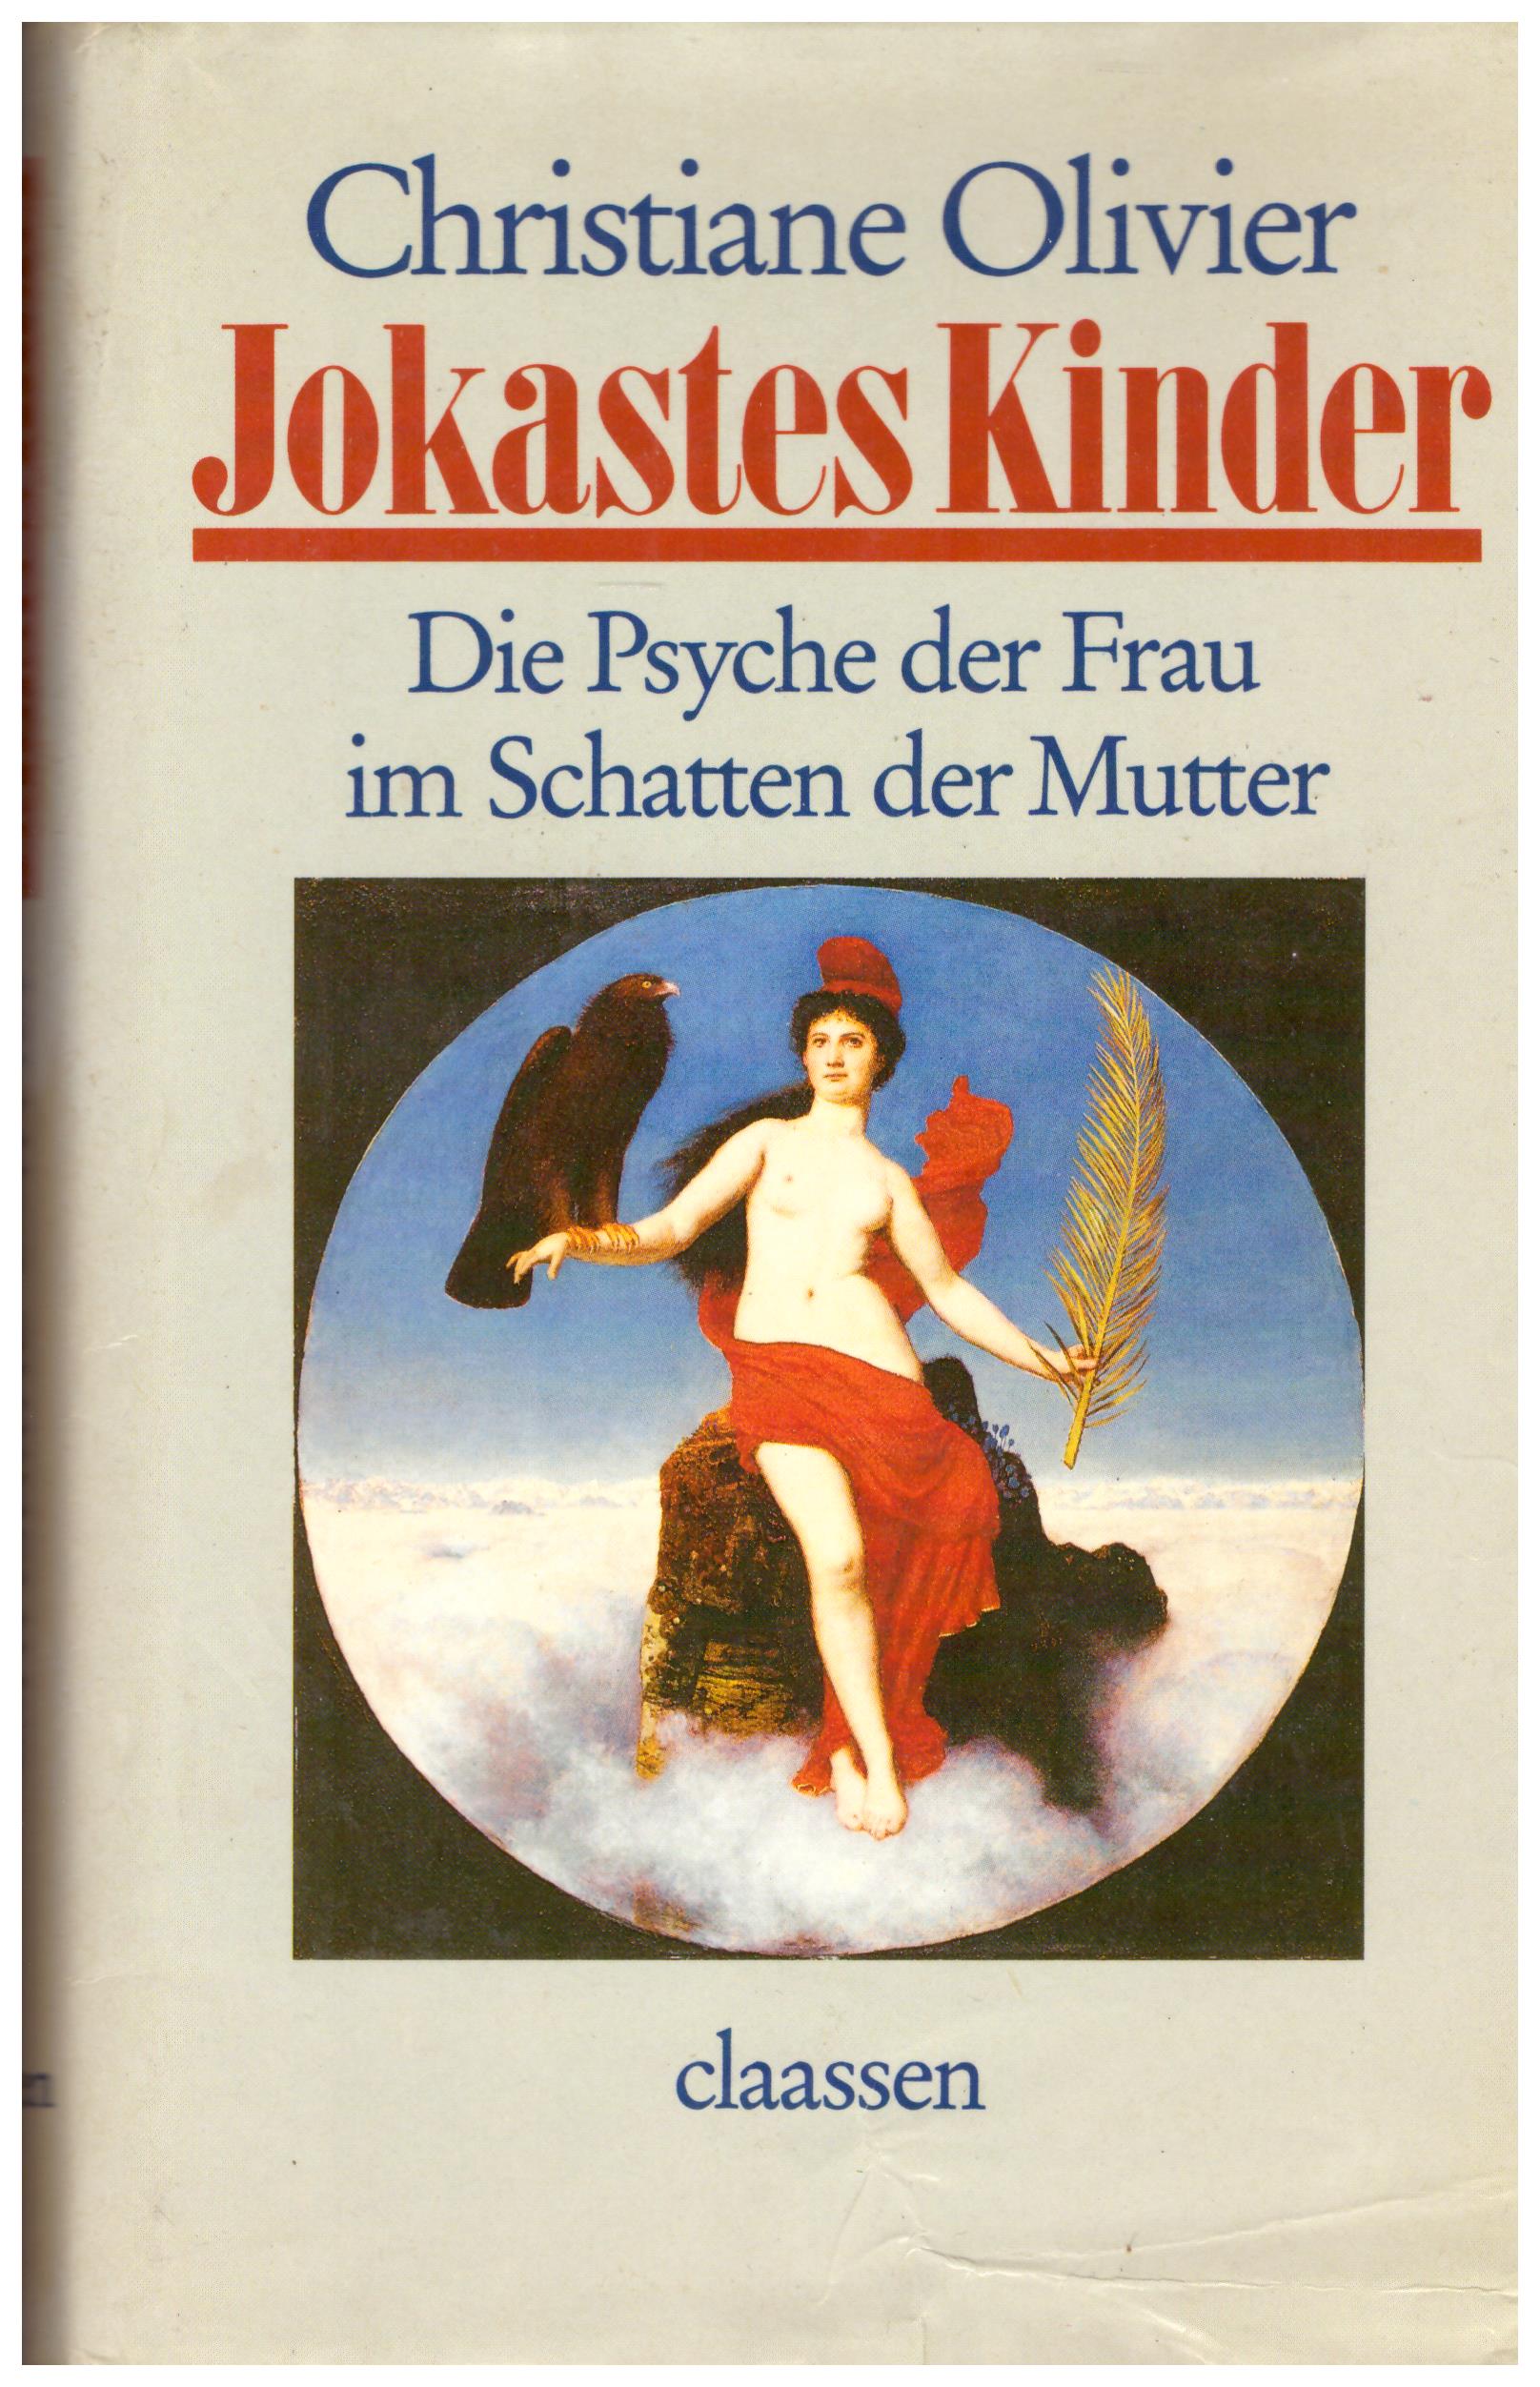 Titolo: Jokaster Kinder, Die Psyche der Frau im Schatten der Mutter     Autore: Christiane Olivier    Editore: Claassen